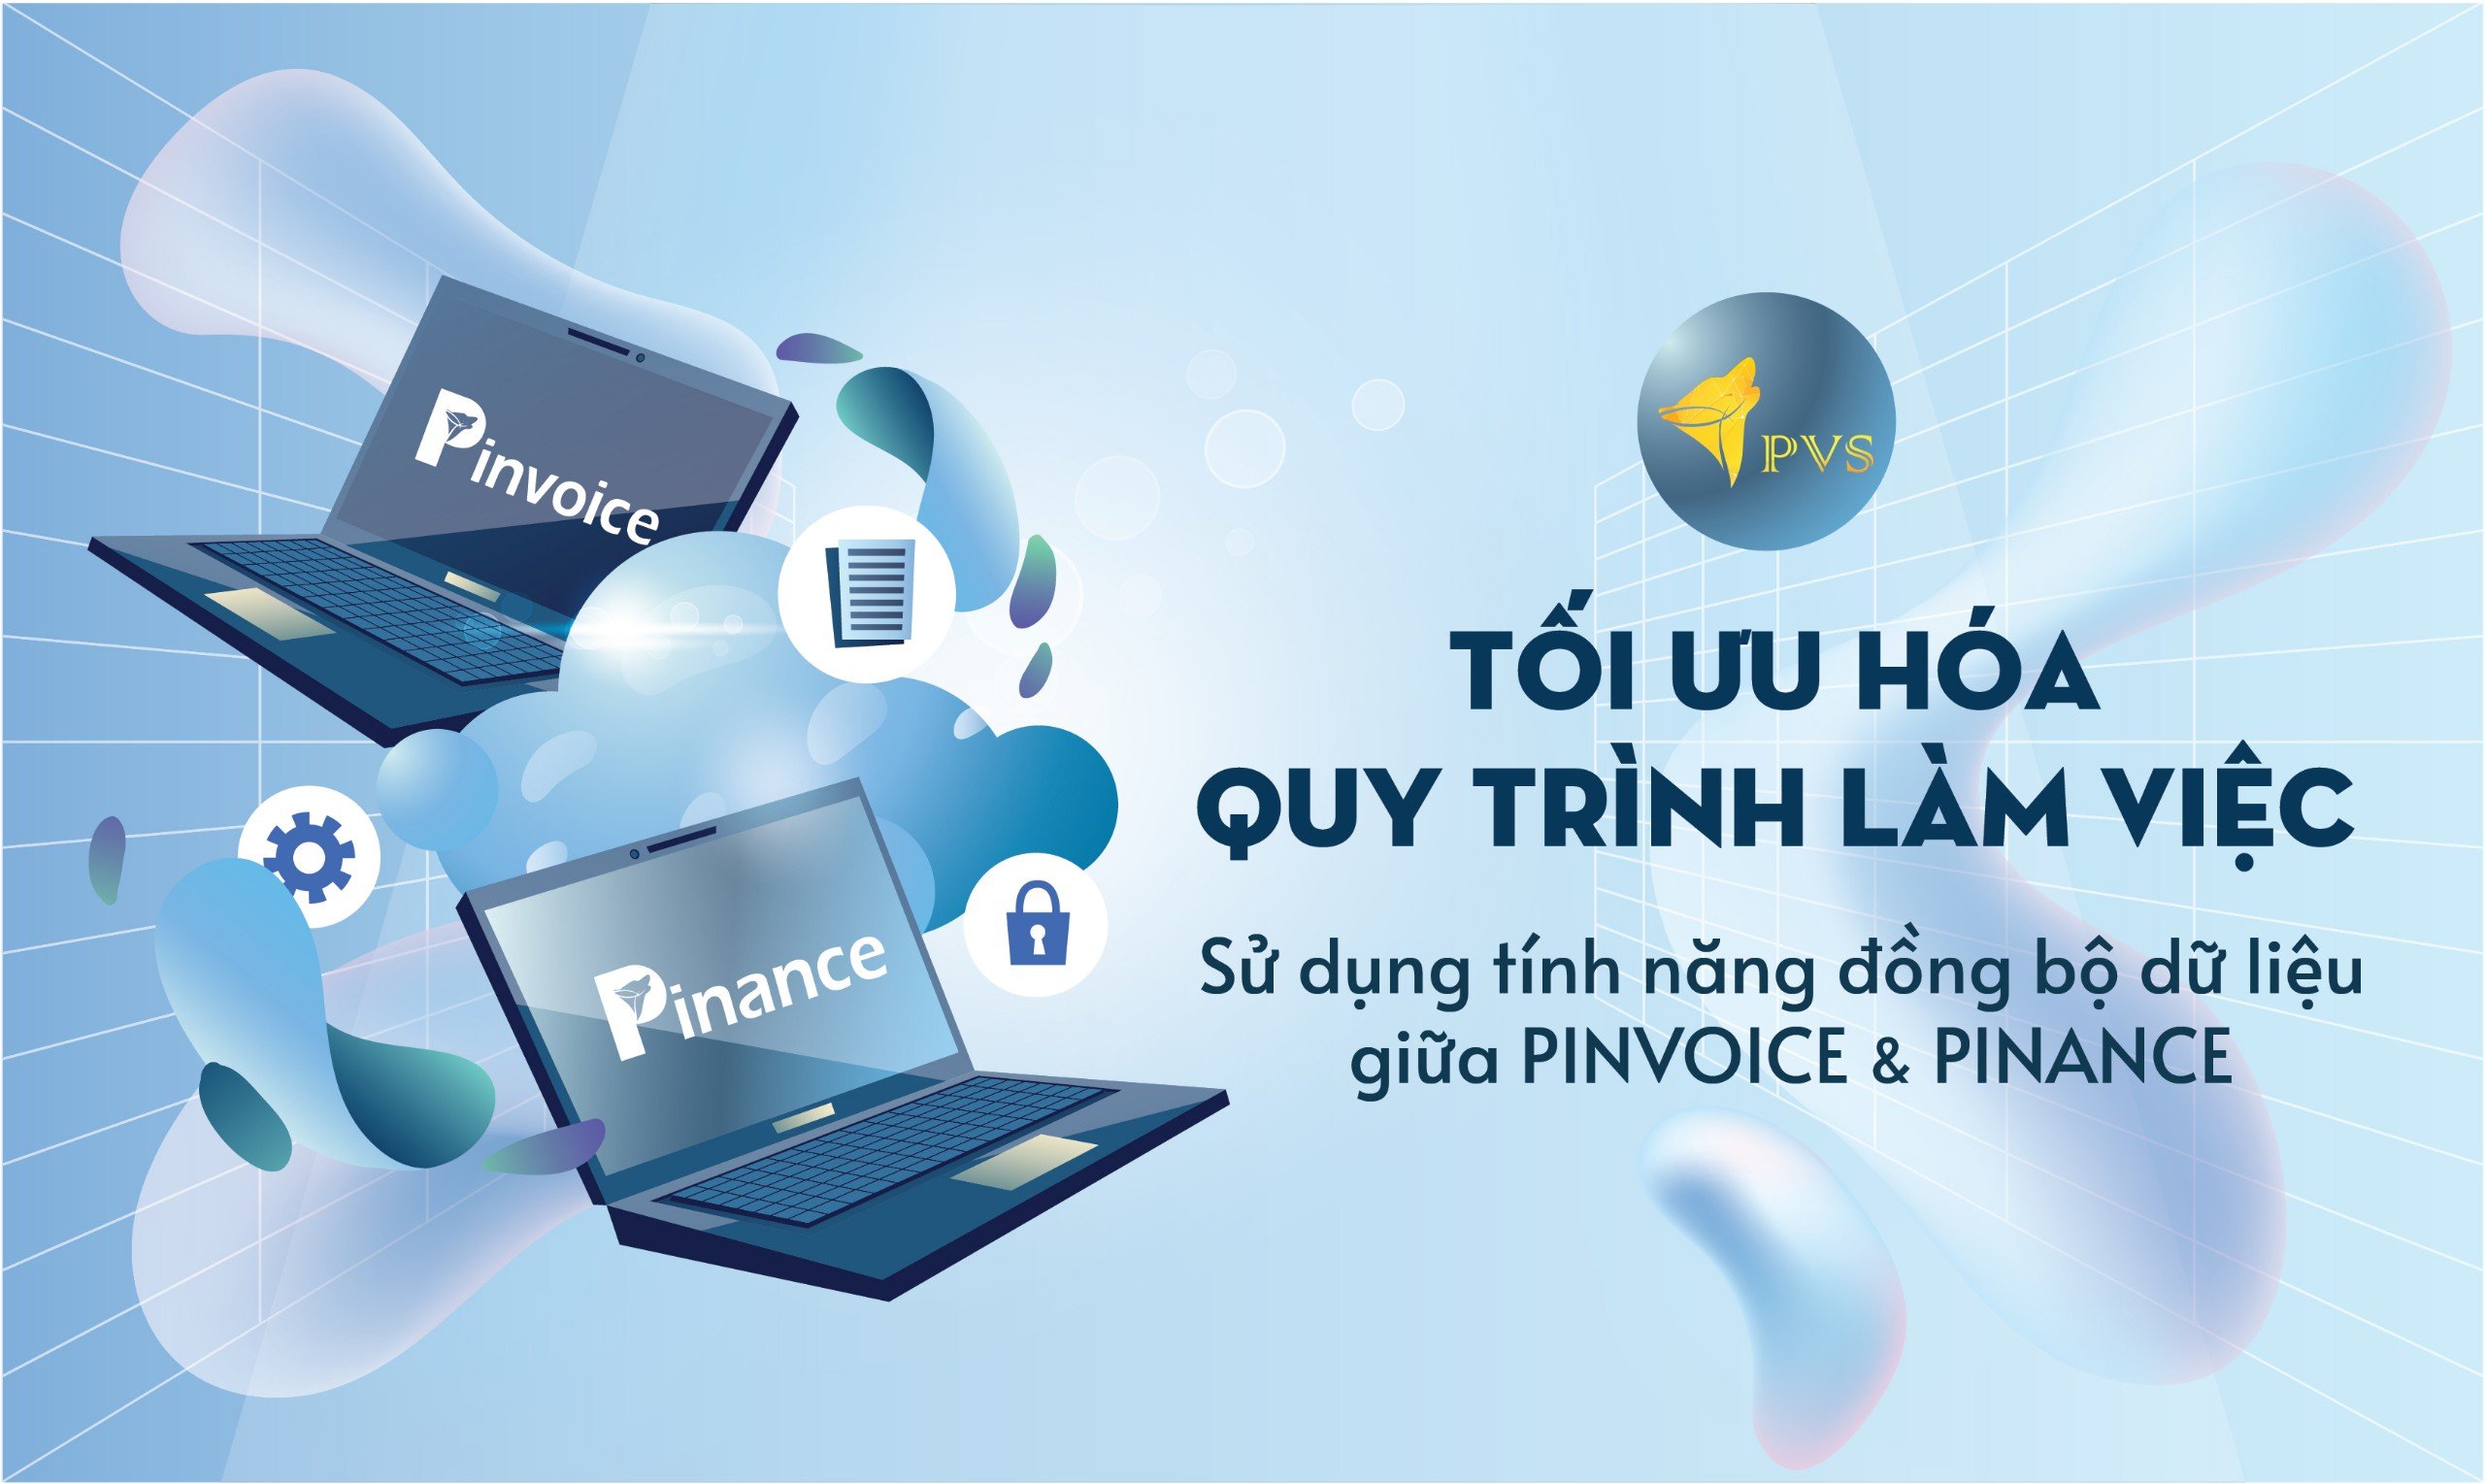 Tối ưu hóa quy trình làm việc với tính năng đồng bộ hóa dữ liệu giữa Pinvoice và Pinance